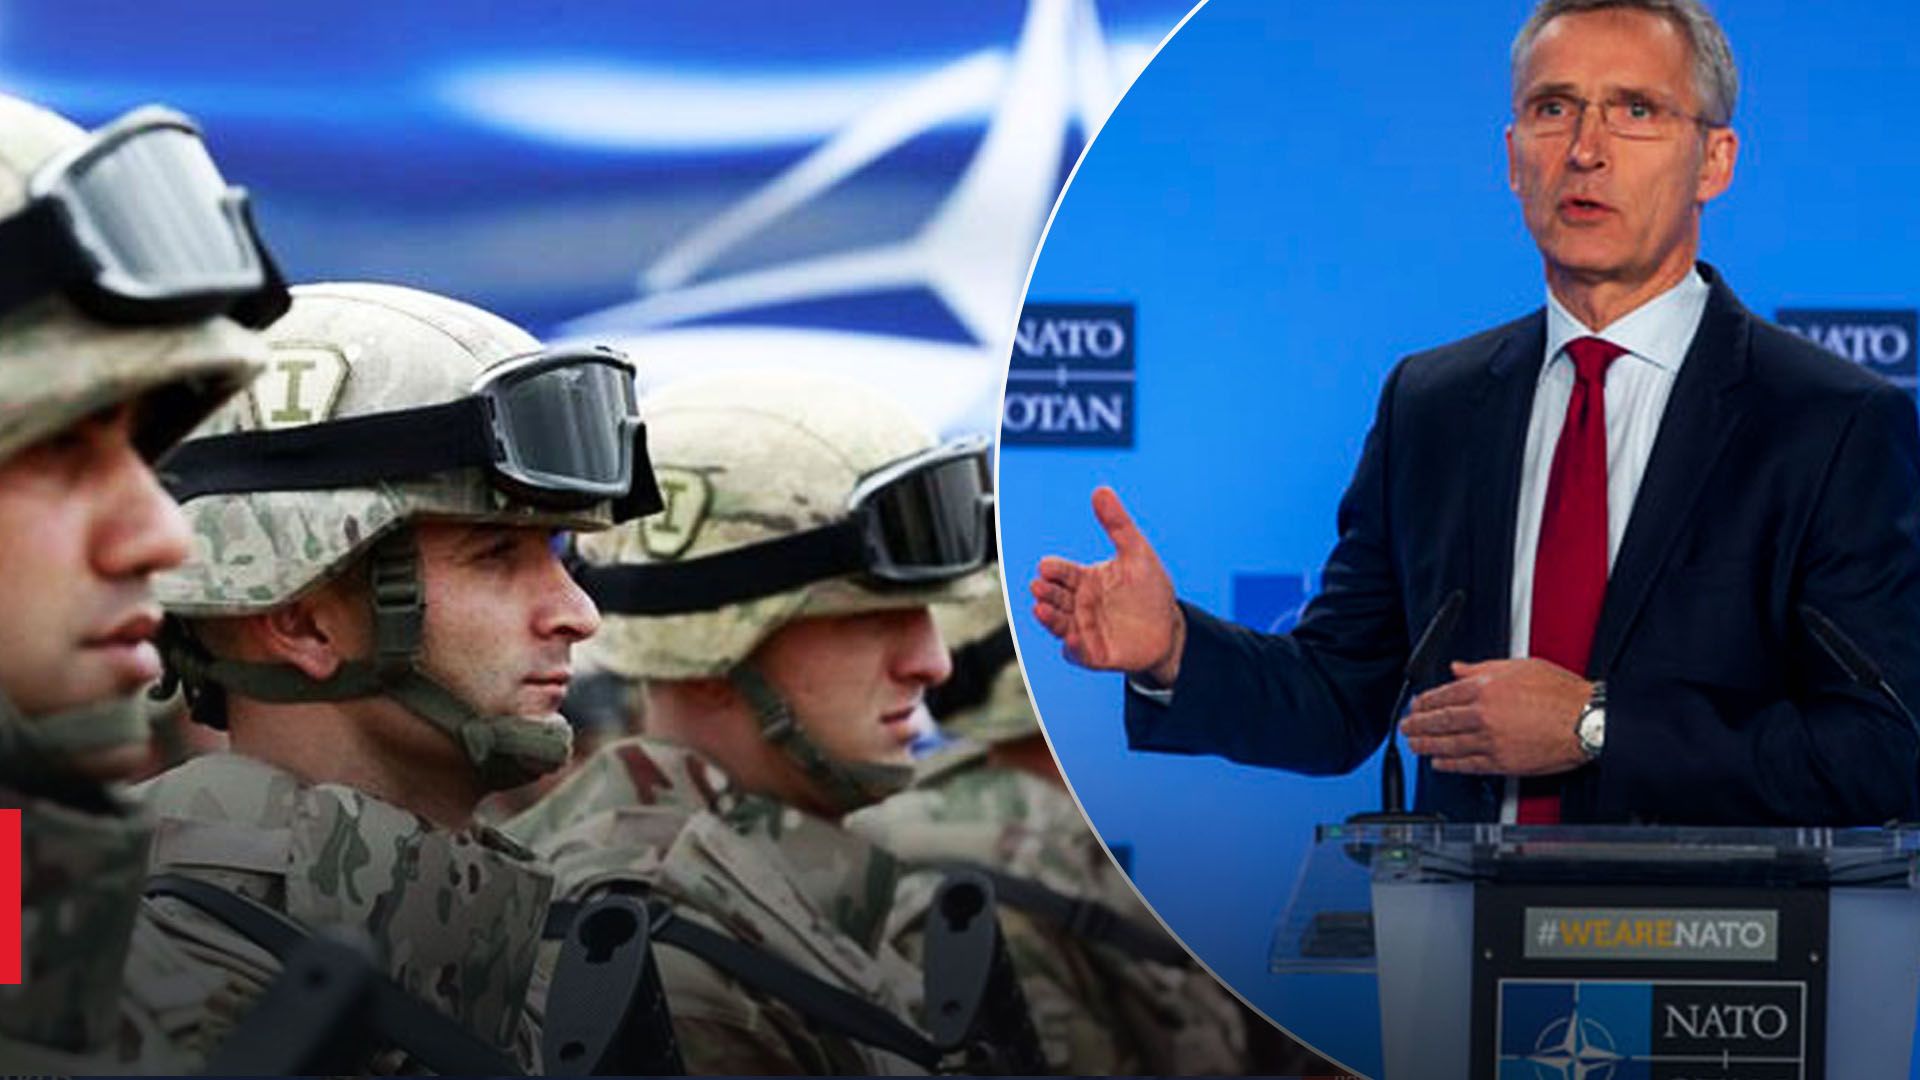 5 статья НАТО – что это, текст статьи и применят ли из-за ситуации в Польше